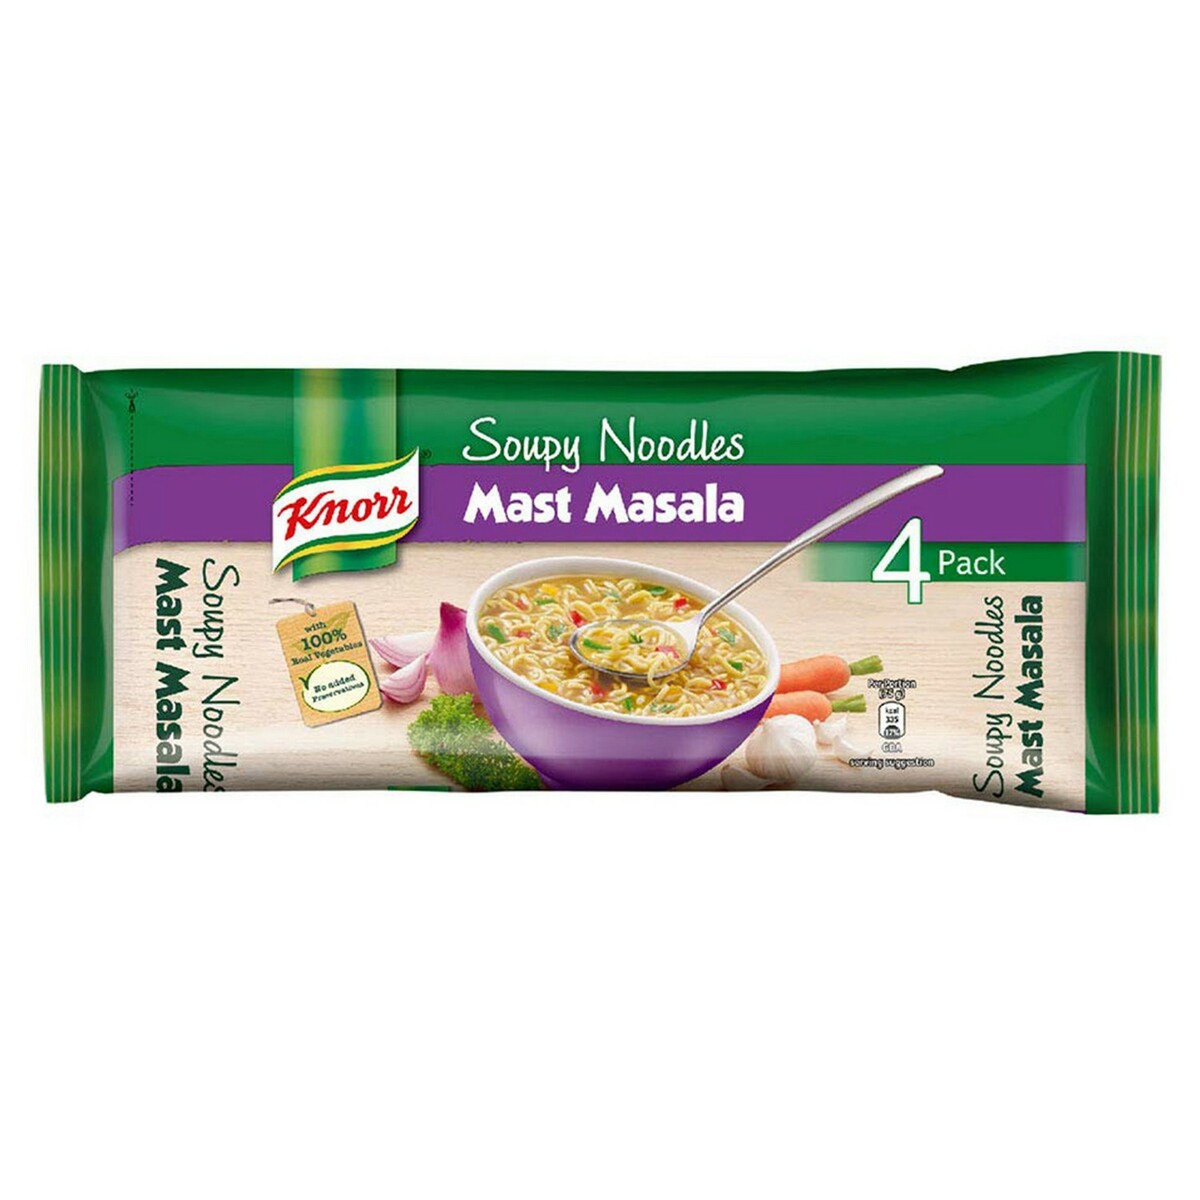 Knorr Soupy Noodles Mast Masala 280g